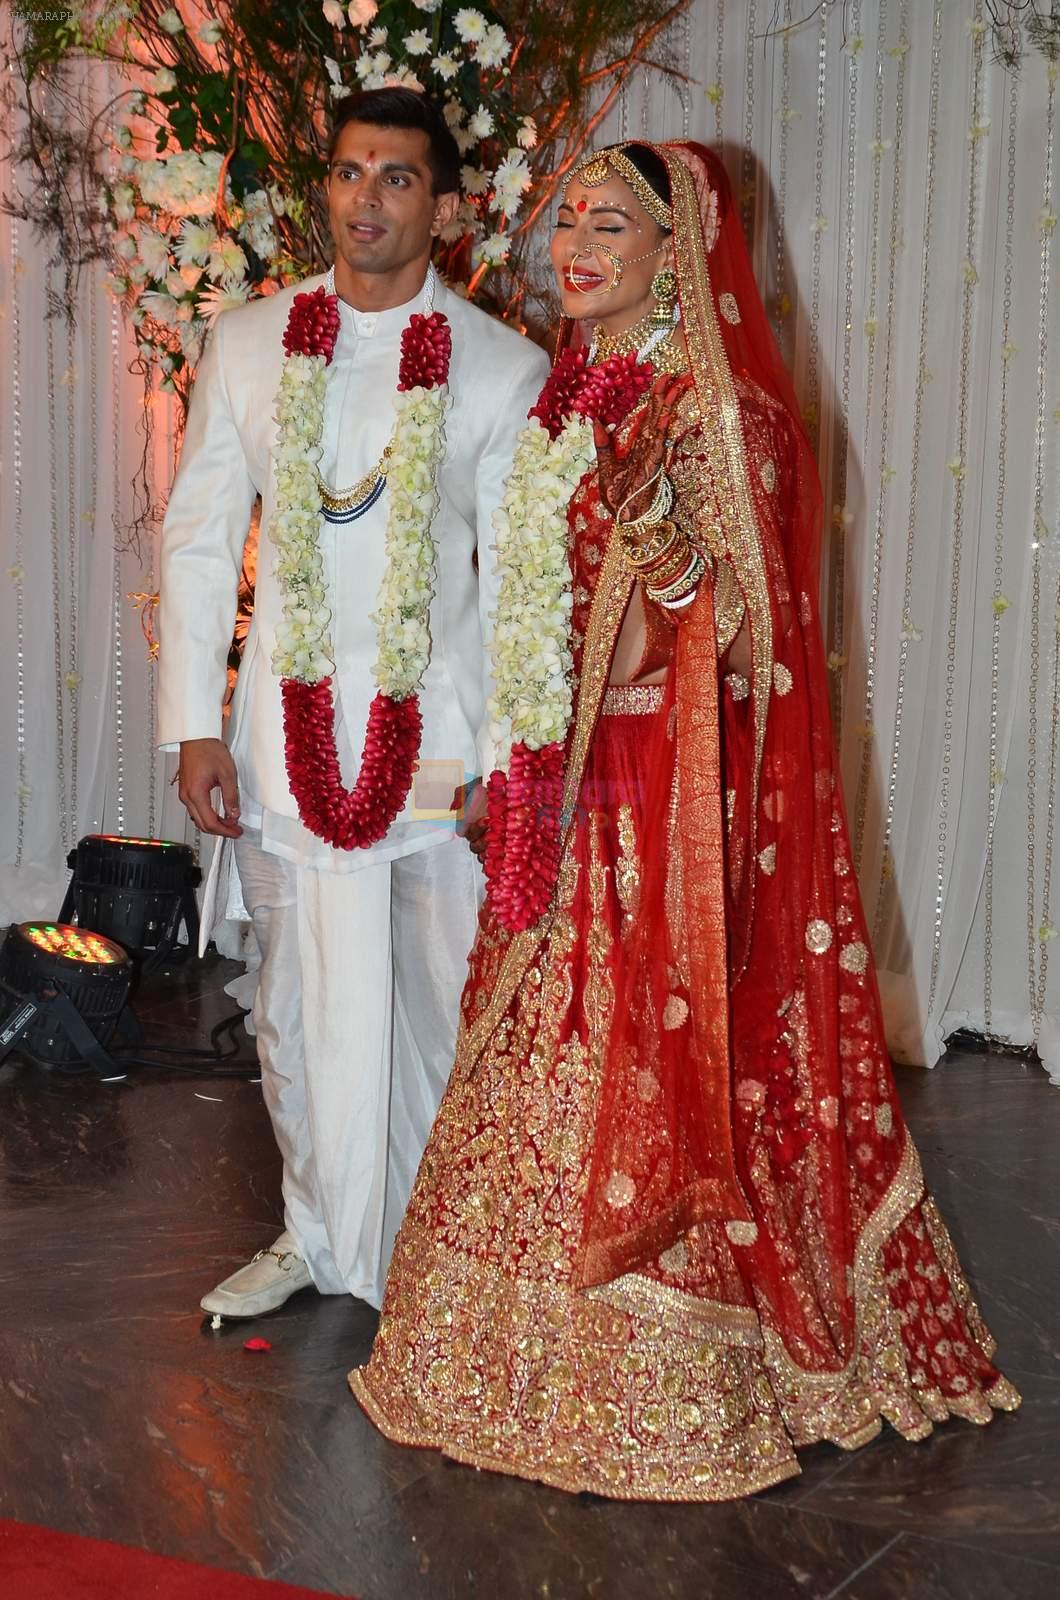 Bipasha Basu and Karan Singh Grover's Wedding on 30th April 2016